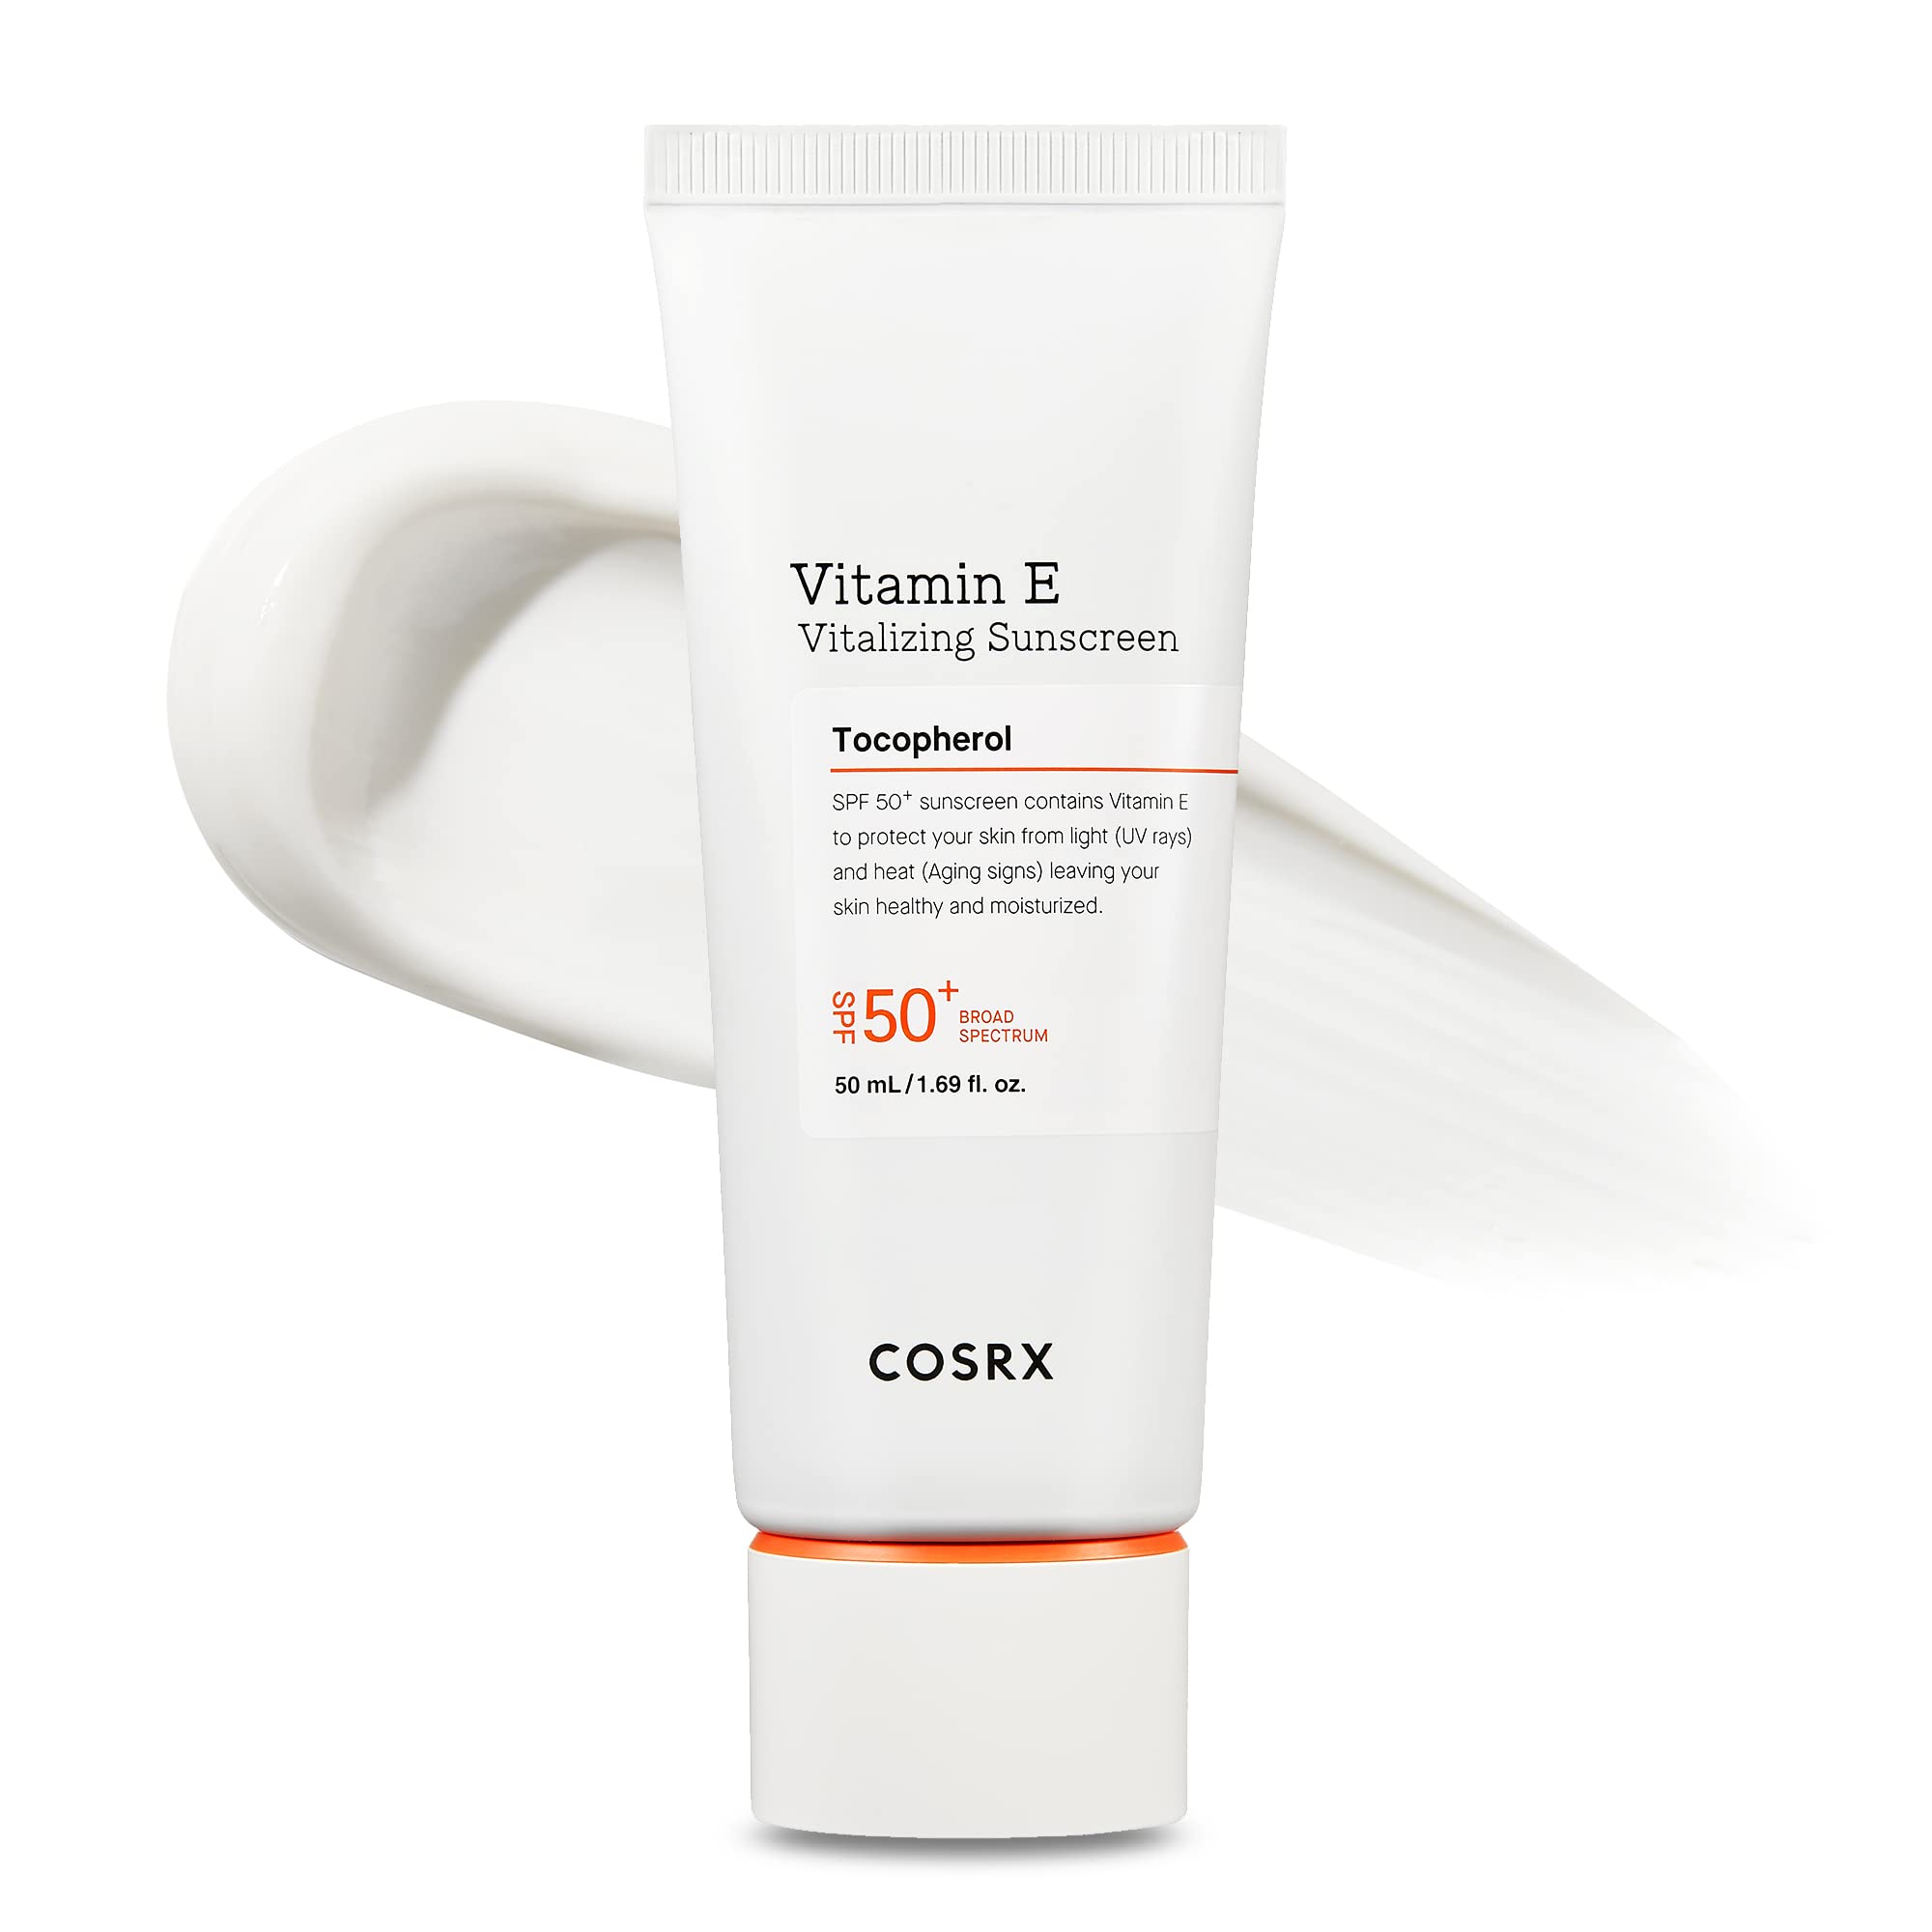 [COSRX] Vitamin E Vitalizing Sunscreen SPF 50+